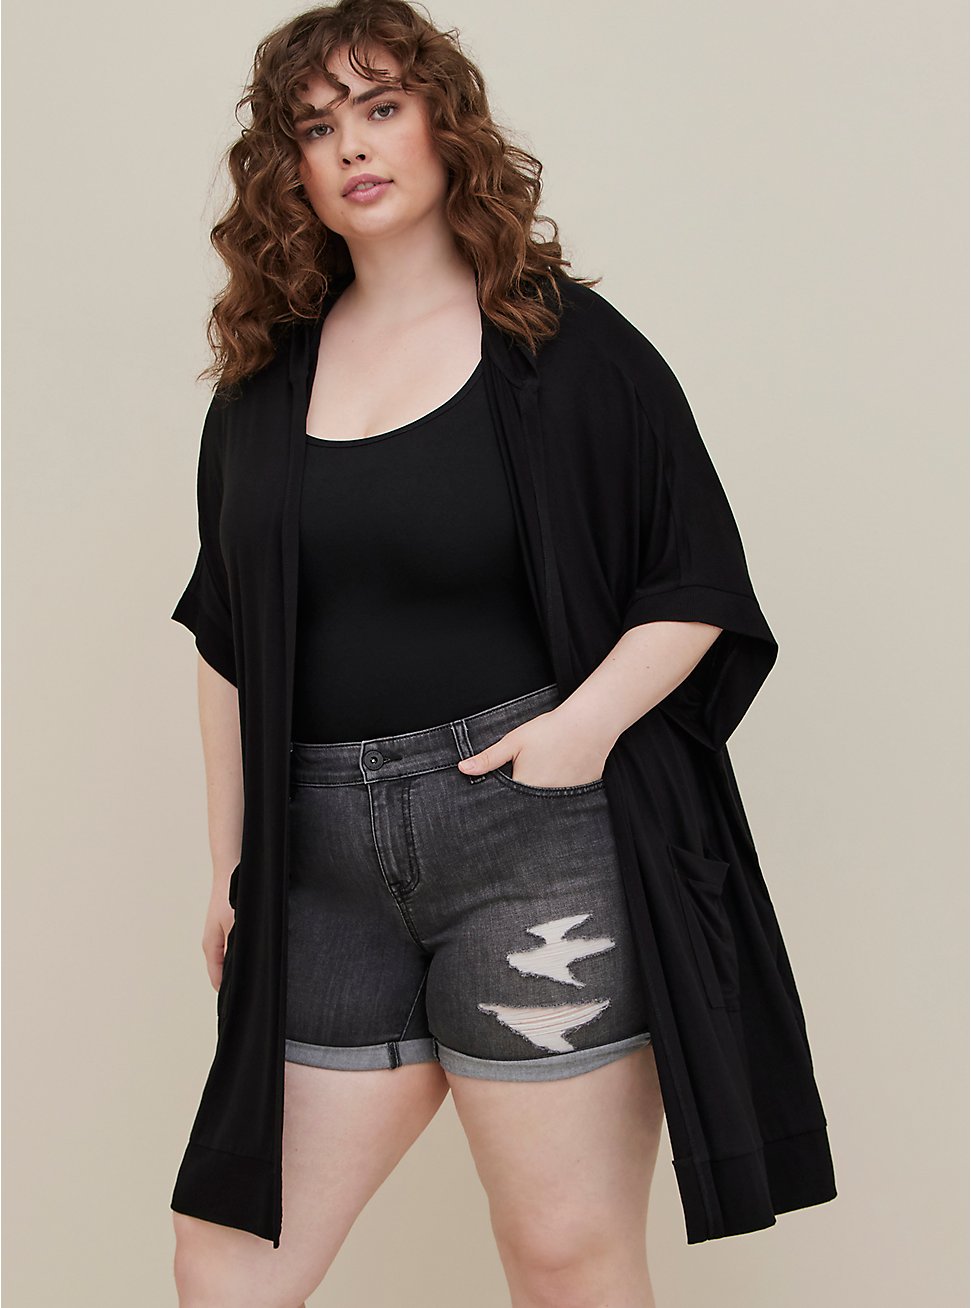 Plus Size LoveSick Sweater Cape - Super Soft Black, DEEP BLACK, hi-res